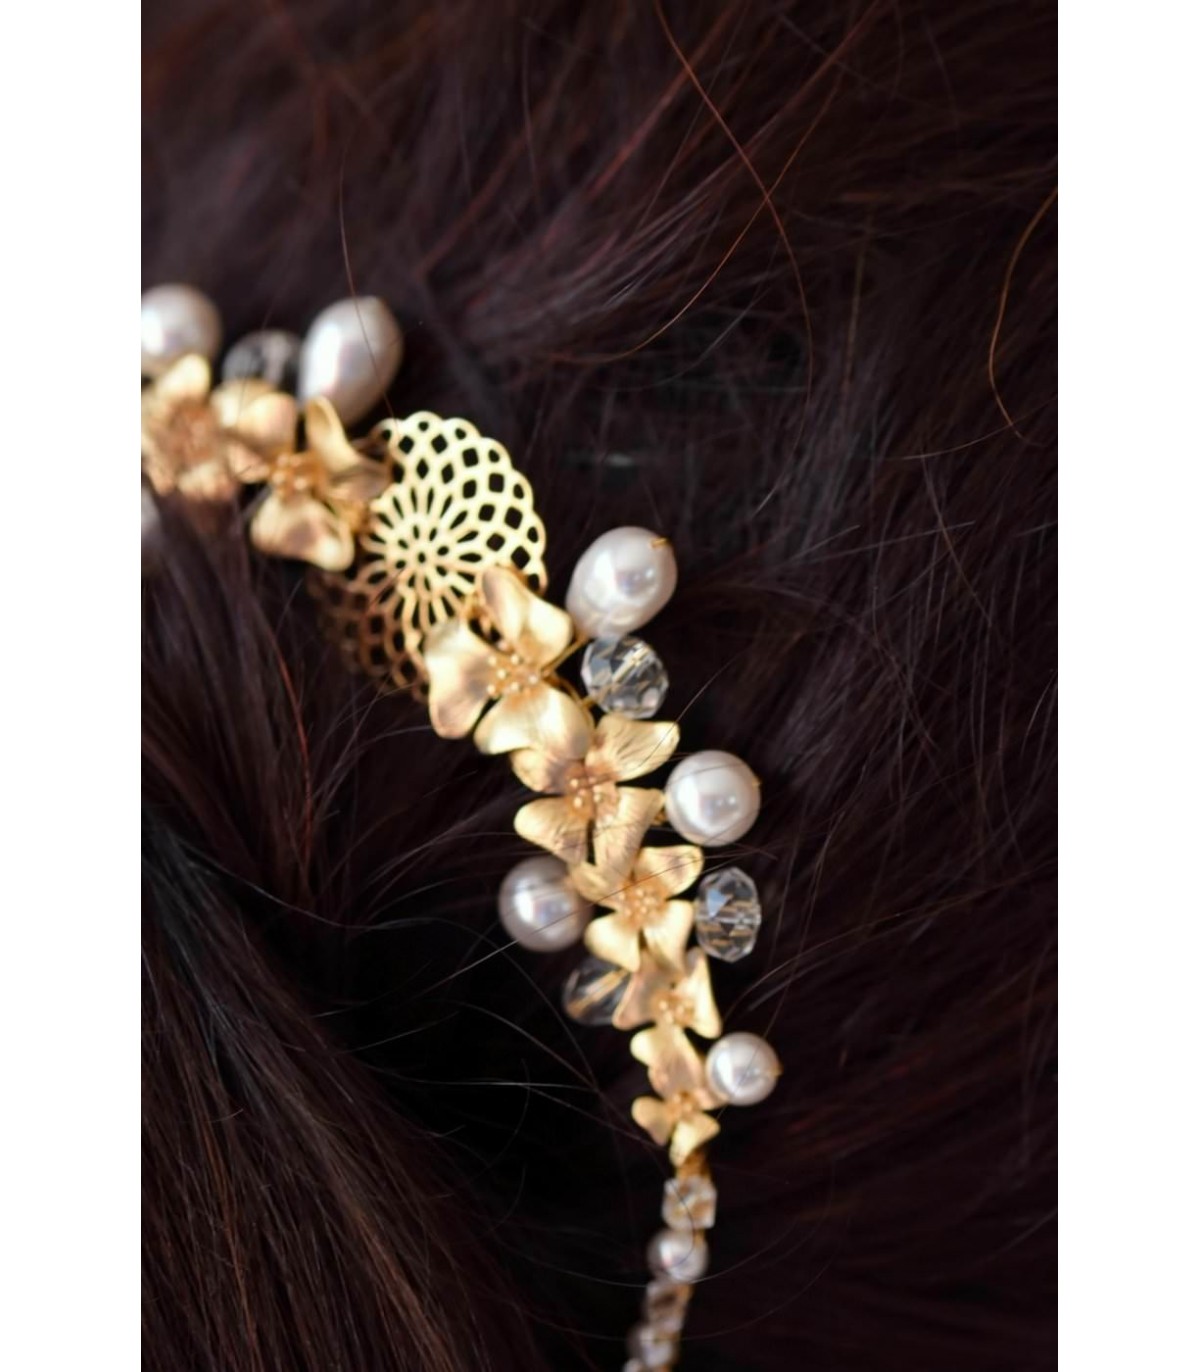 Ornement de cheveux Oasis avec fleurs dorées et perles pour le chignon de la mariée